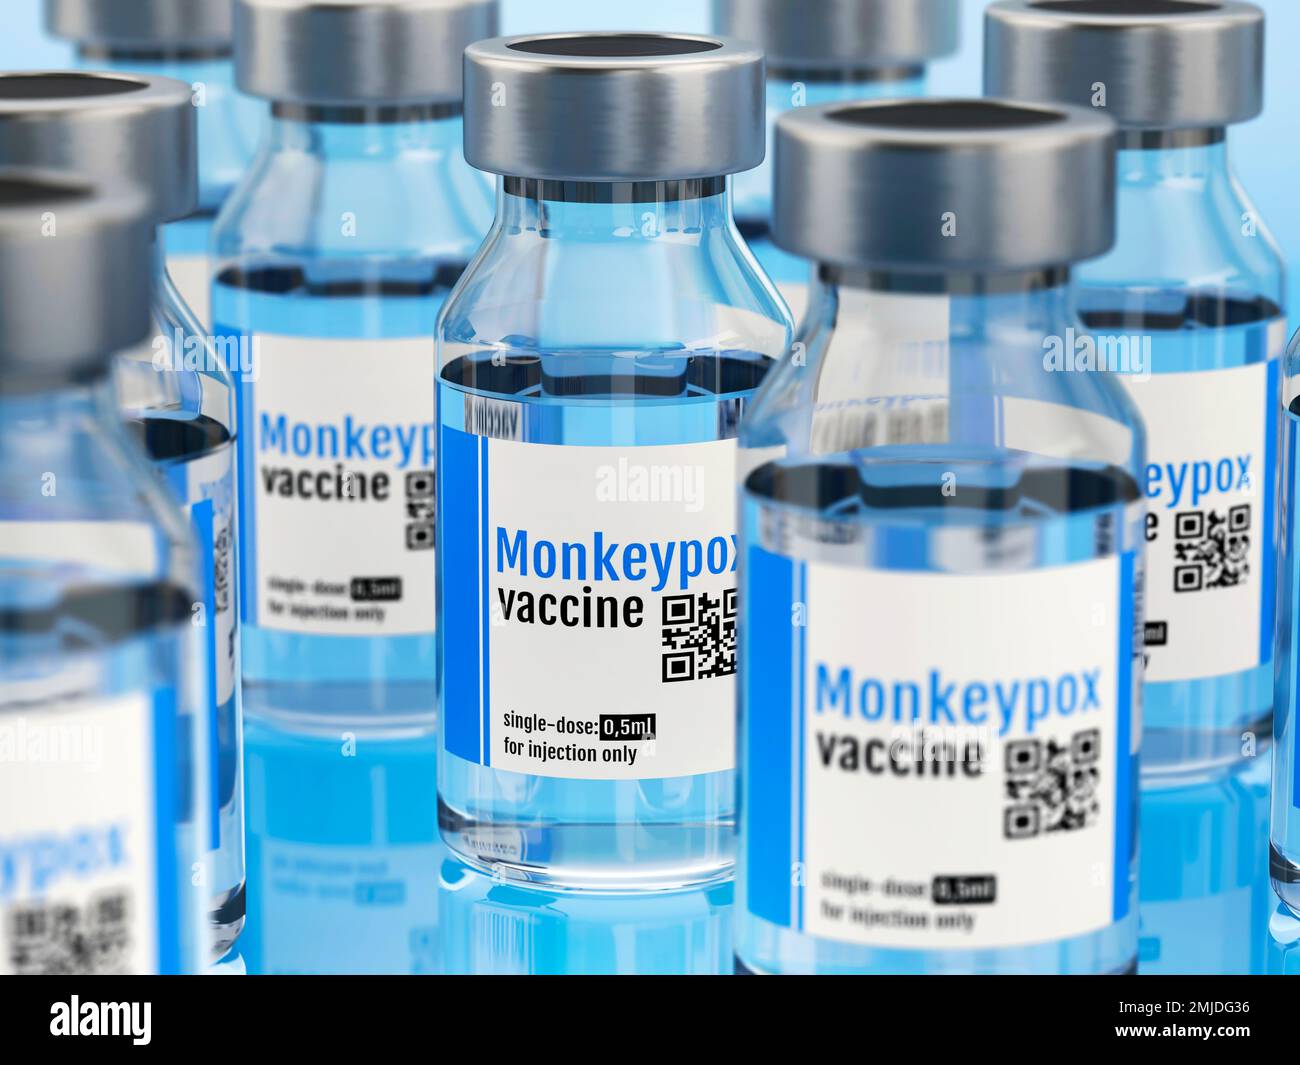 Mpox vaccine, conceptual illustration Stock Photo